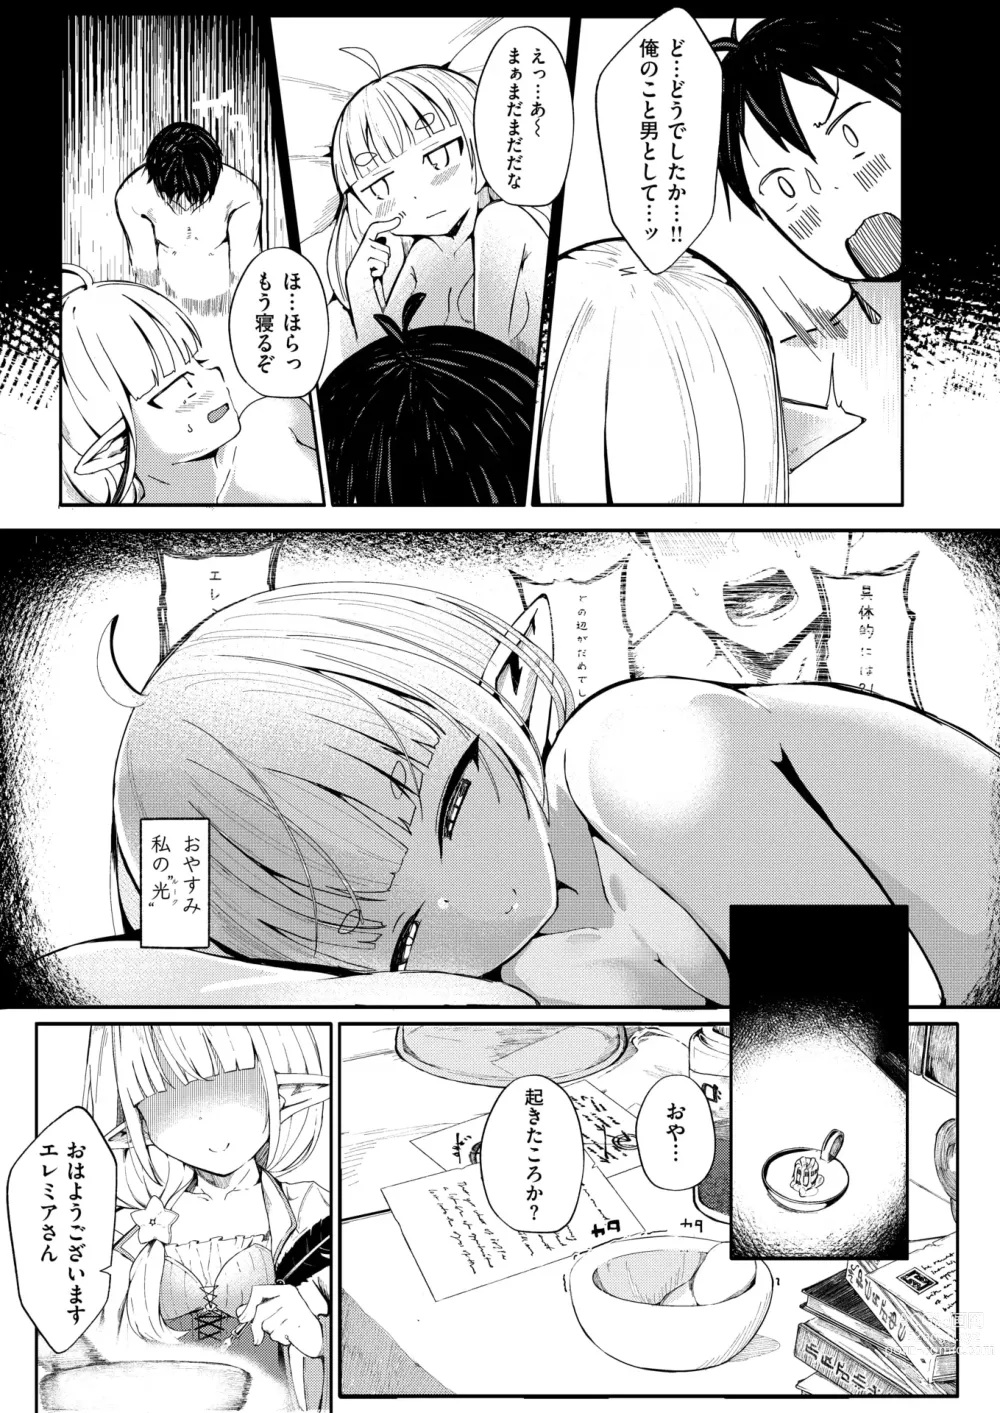 Page 29 of manga Kono Kokoro Oya Shirazu